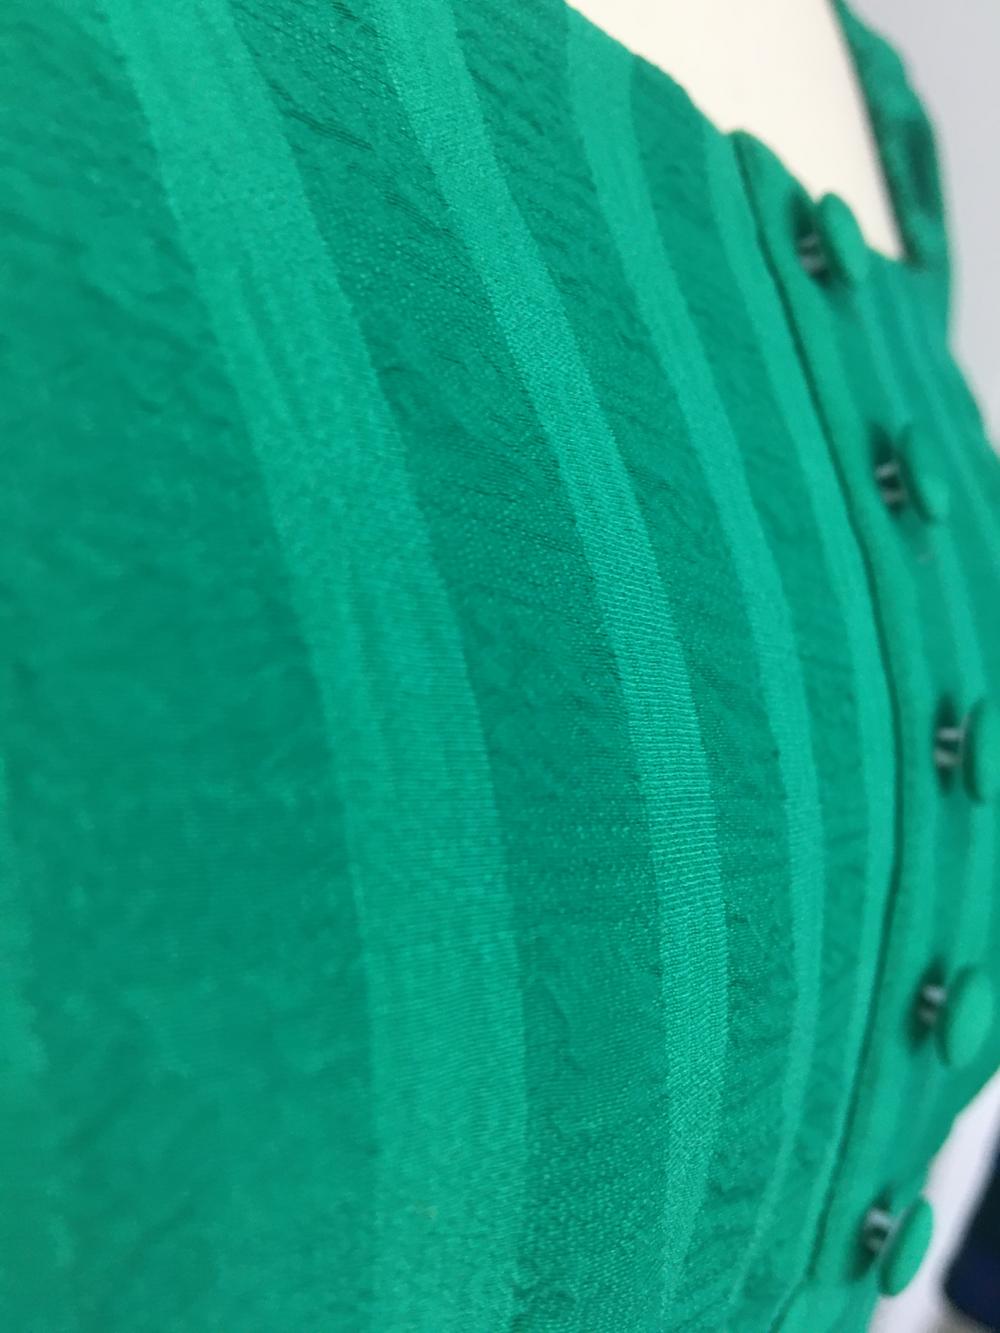 Женское многоярусное платье зеленого цвета с оборками и отделкой из рюшек